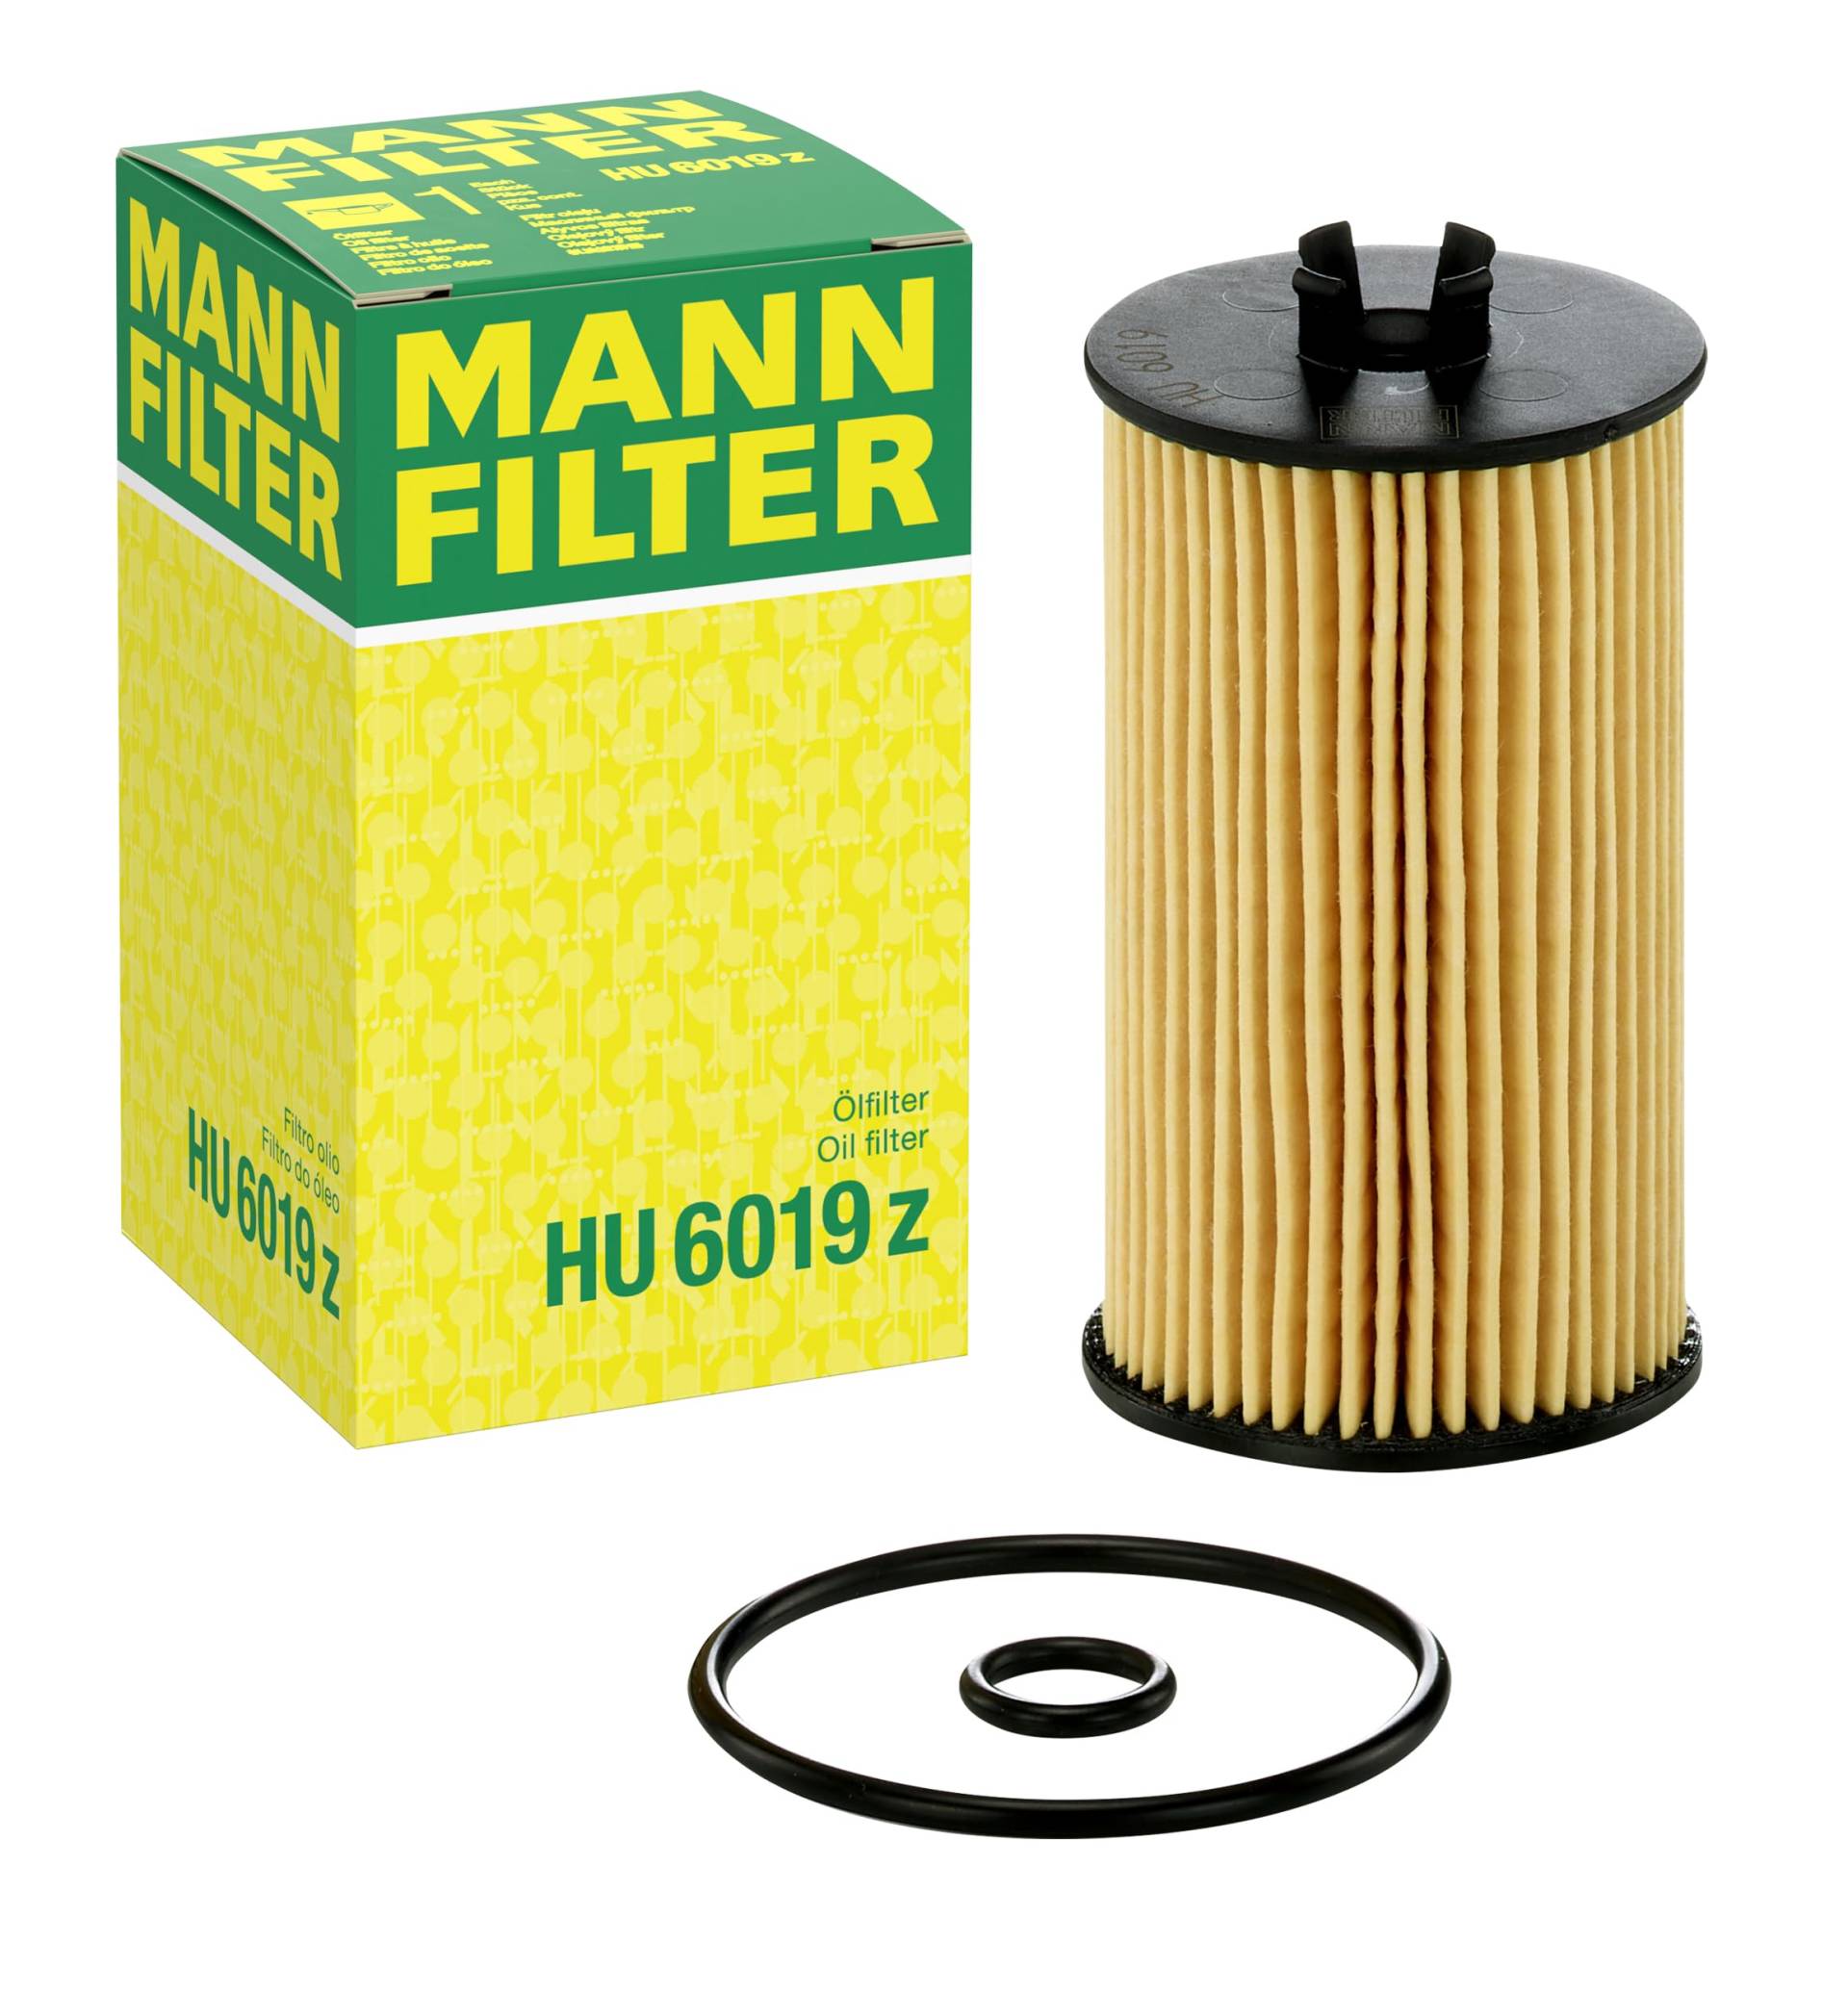 MANN-FILTER HU 6019 z Ölfilter – Ölfilter Satz mit Dichtung / Dichtungssatz – Für PKW von MANN-FILTER